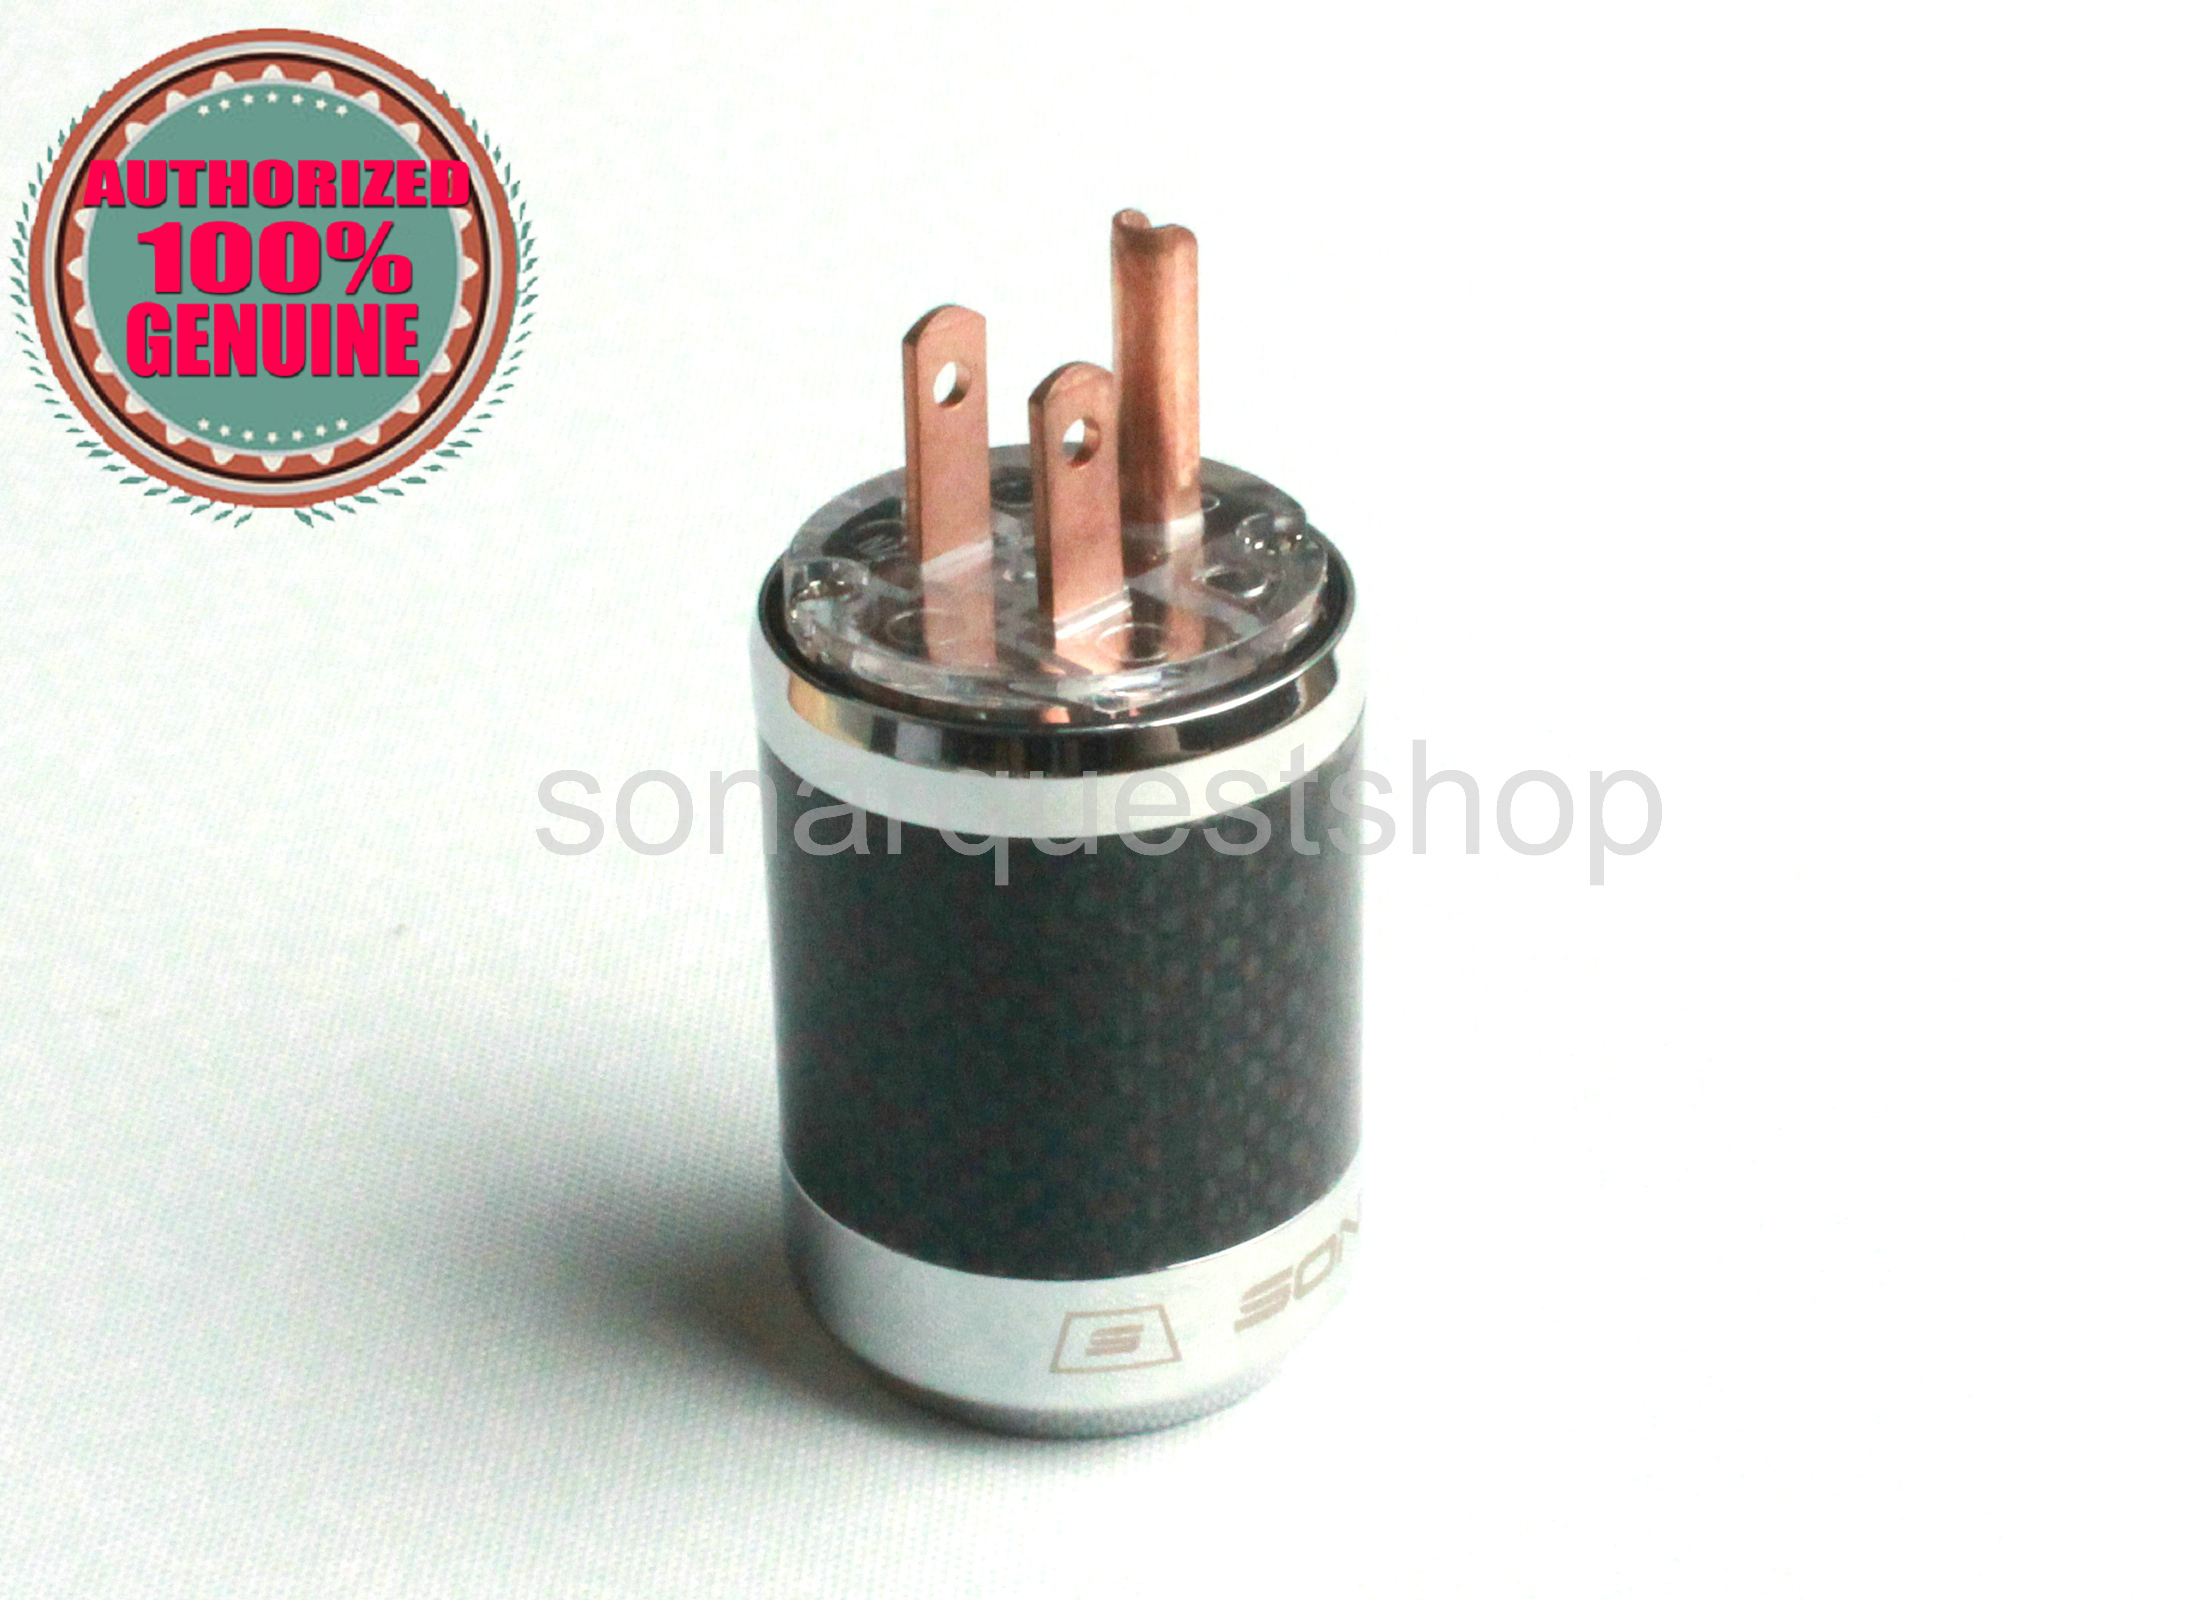 PYK SONARQUEST SQ-P39(C)T US Red Copper UT Carbon fiber Power Plug